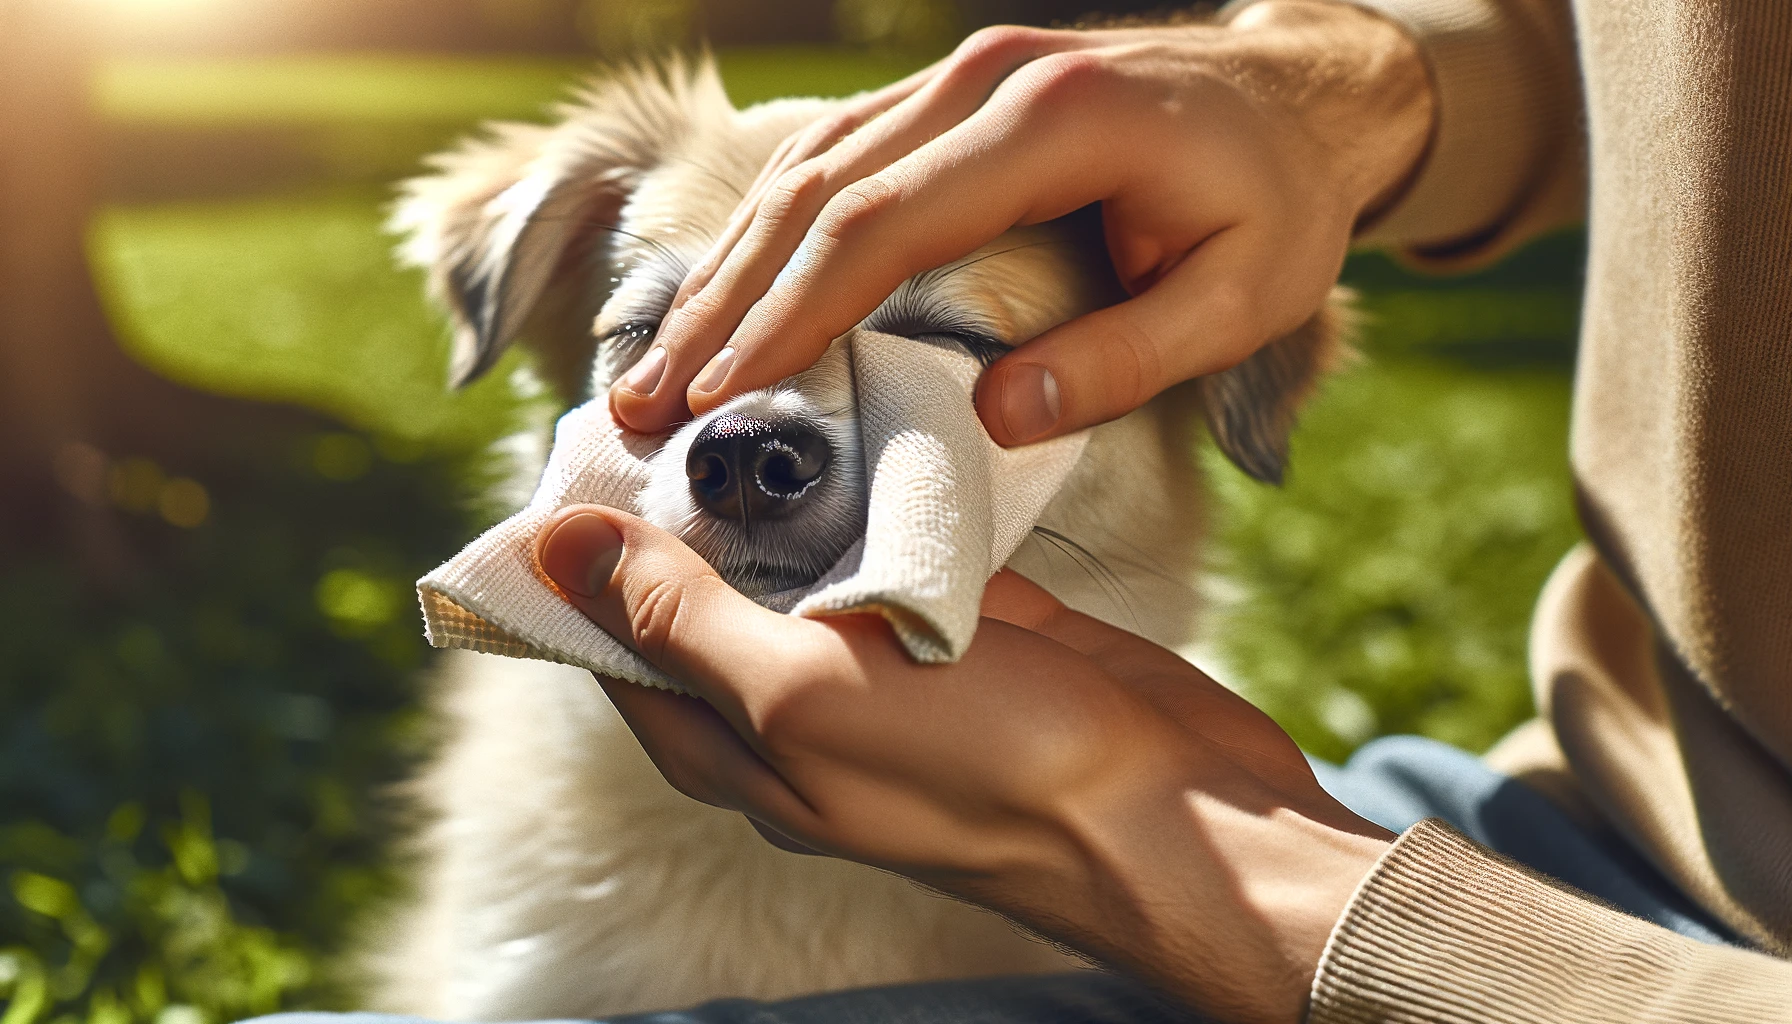 日当たりの良い屋外で、犬の目の周りを柔らかい布で優しく拭く手。これは、犬の涙やけを減らすための簡単で効果的な方法を示しています。